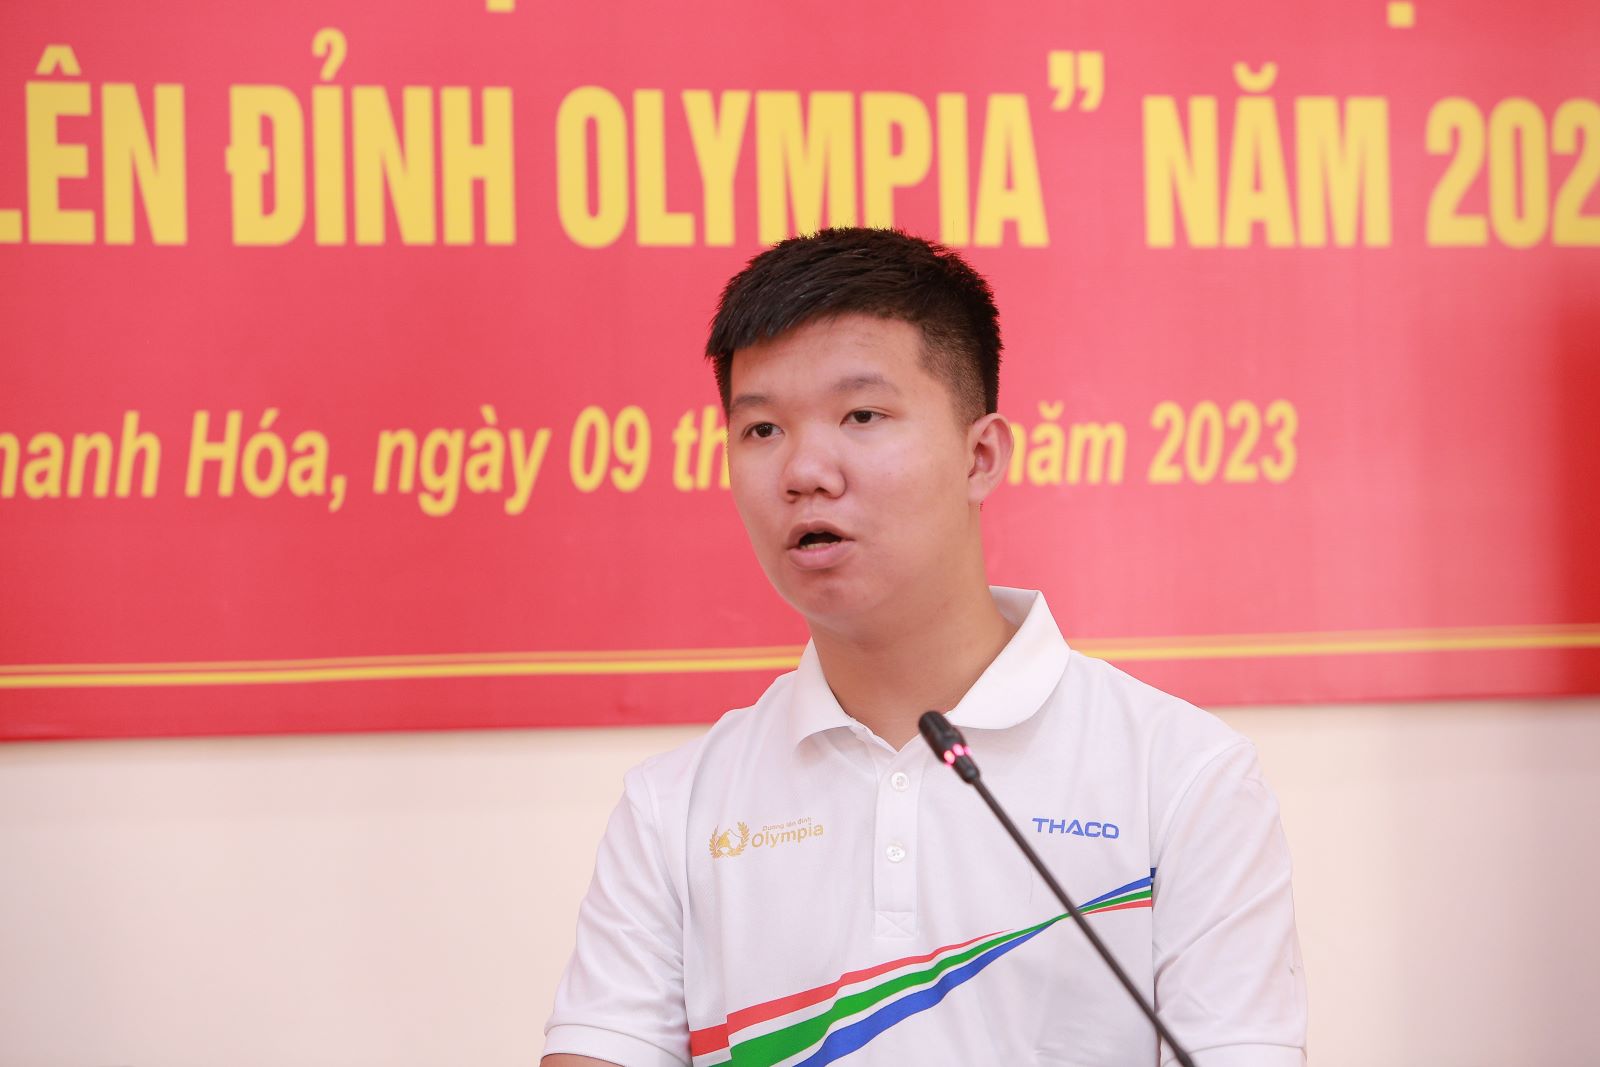 Bí thư và Chủ tịch tỉnh Thanh Hóa trao khen thưởng cho quán quân Olympia